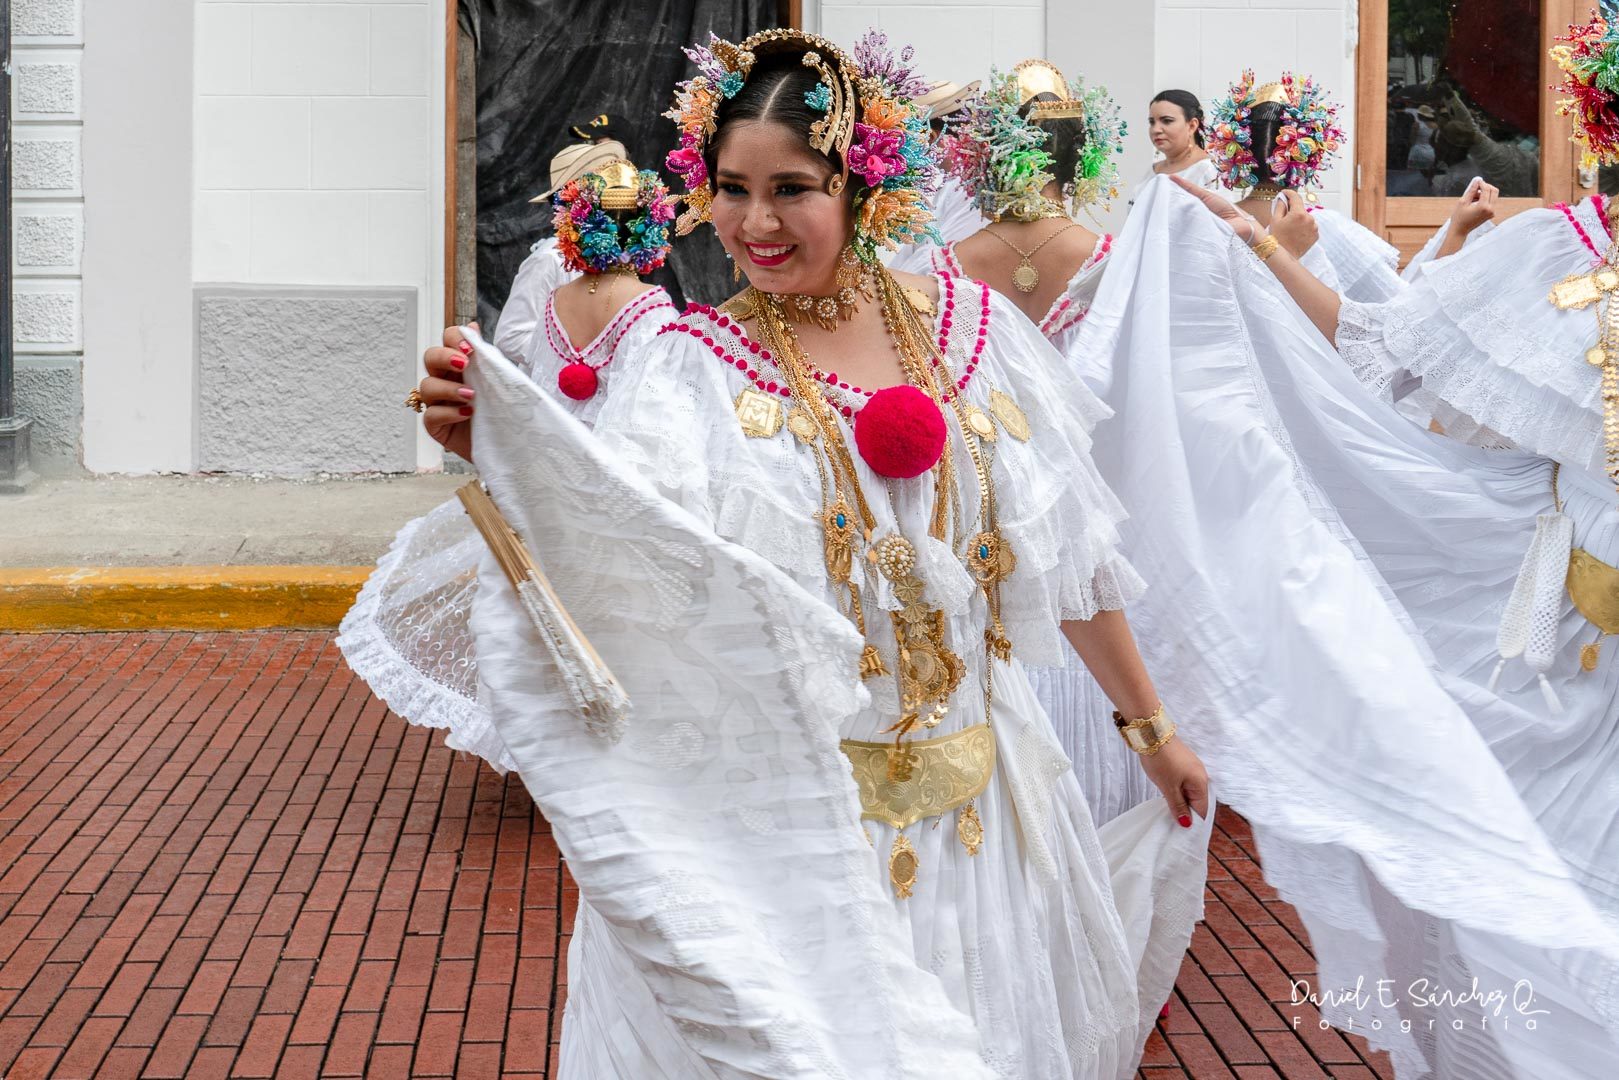 Pollera blancas en desfile folclórico en el Casco Antiguo